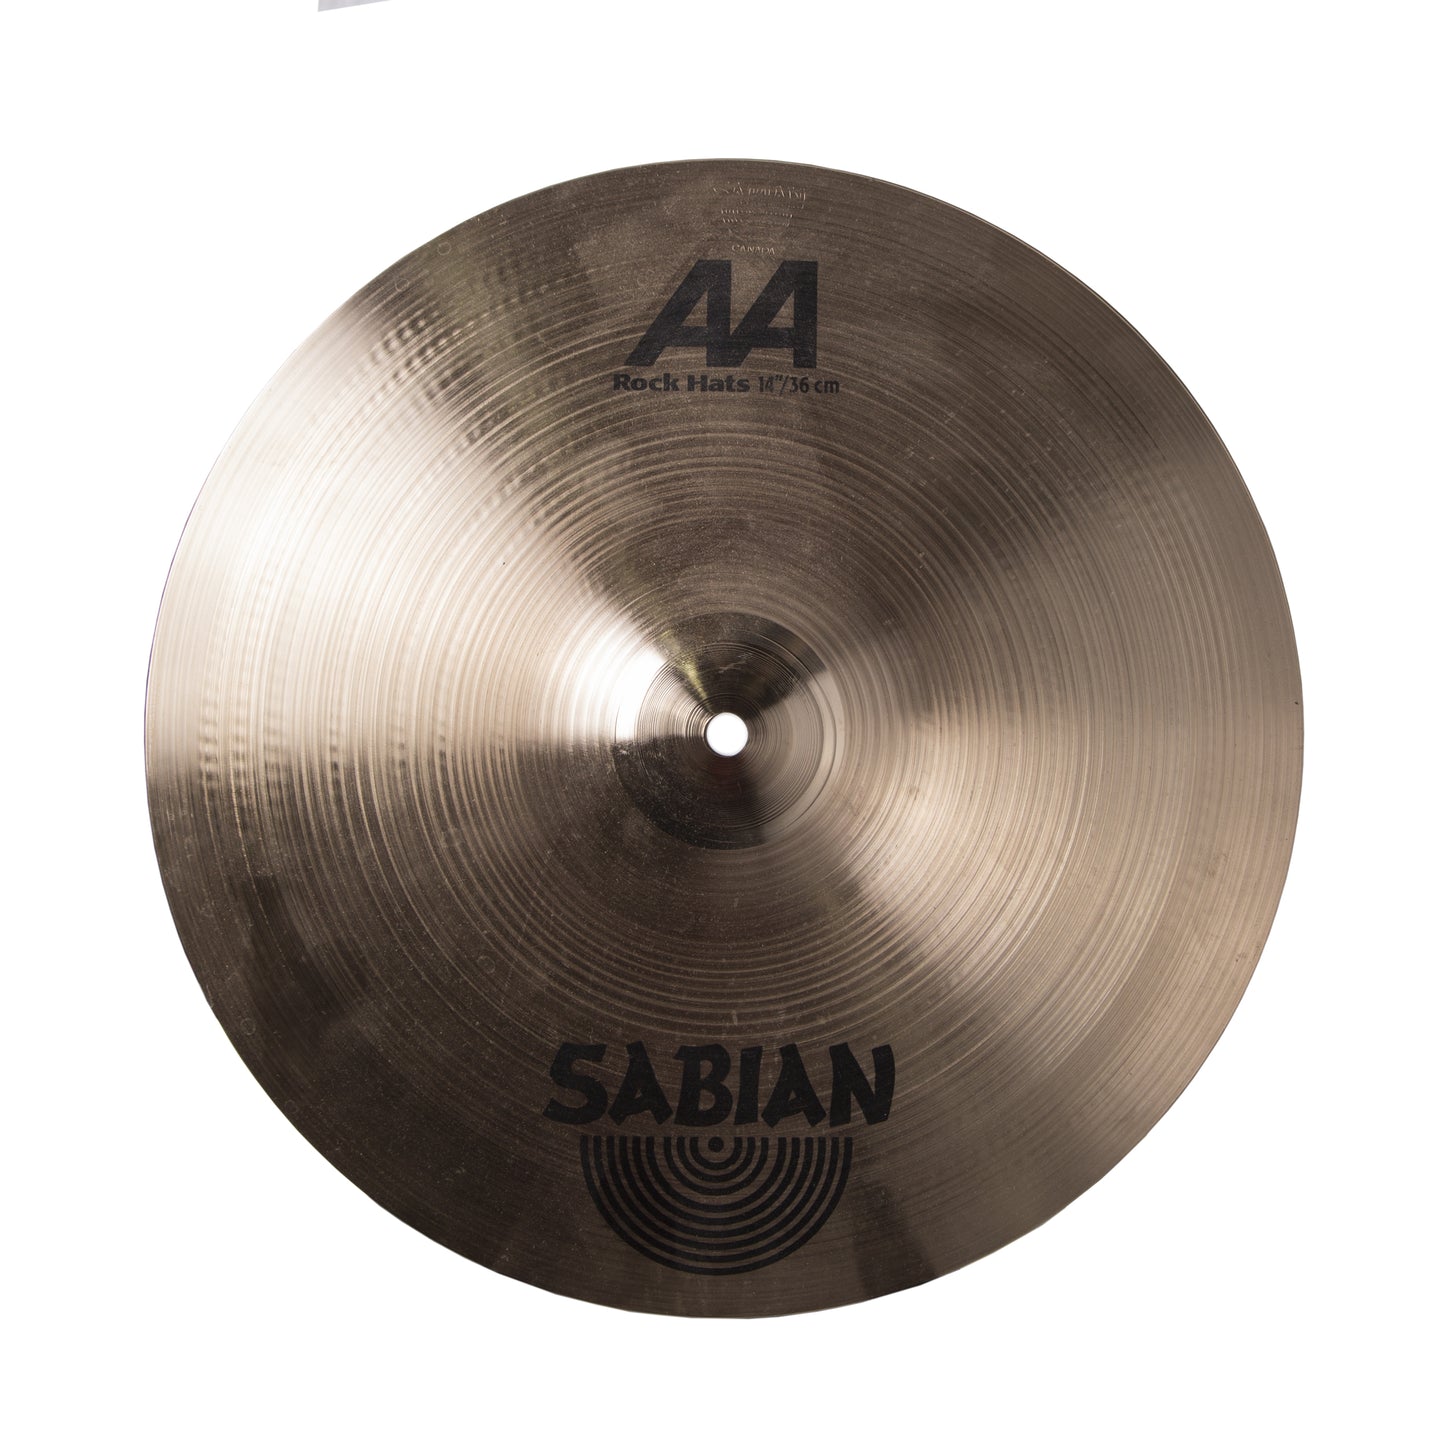 Sabian 14" AA Rock Hi-hat Cymbals